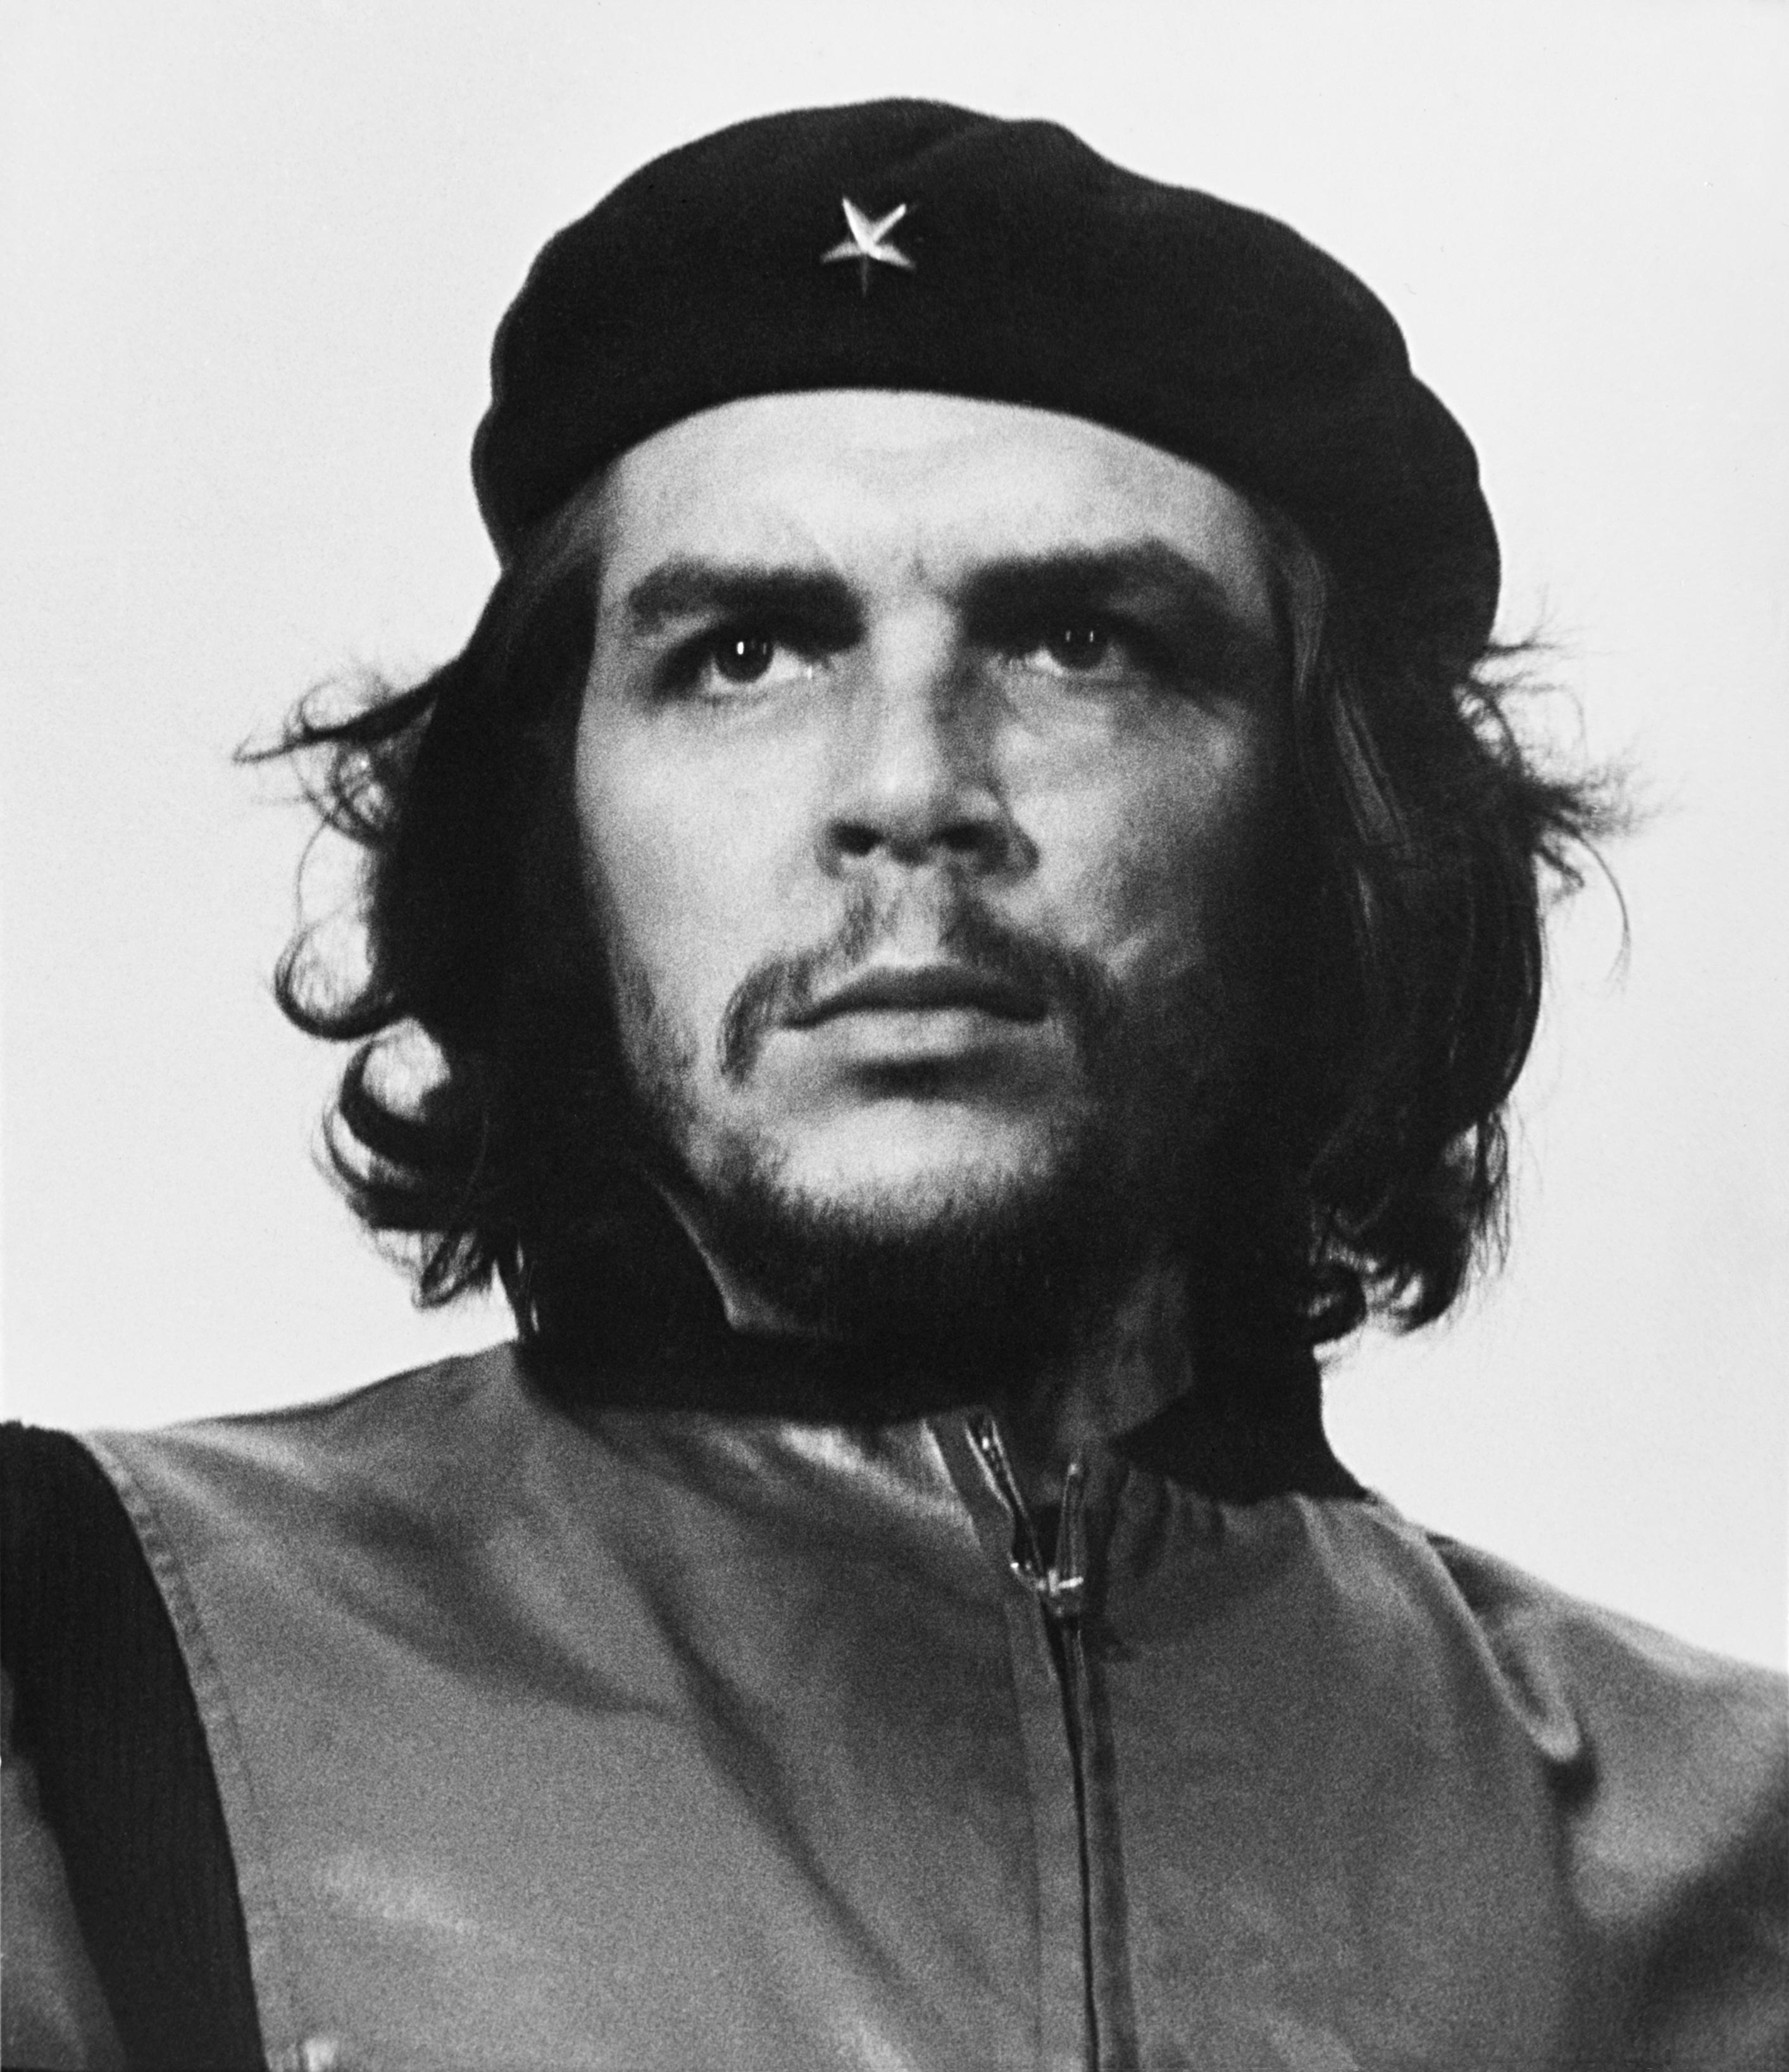 auteur Che Guevara de la citation Ce n'est pas une histoire d'exploits héroïques, ou simplement le récit d'un cynique; Au moins, je ne veux pas dire que ce soit. C'est un aperçu de deux vies en parallèle pendant un certain temps, avec des espoirs similaires et des rêves convergents.